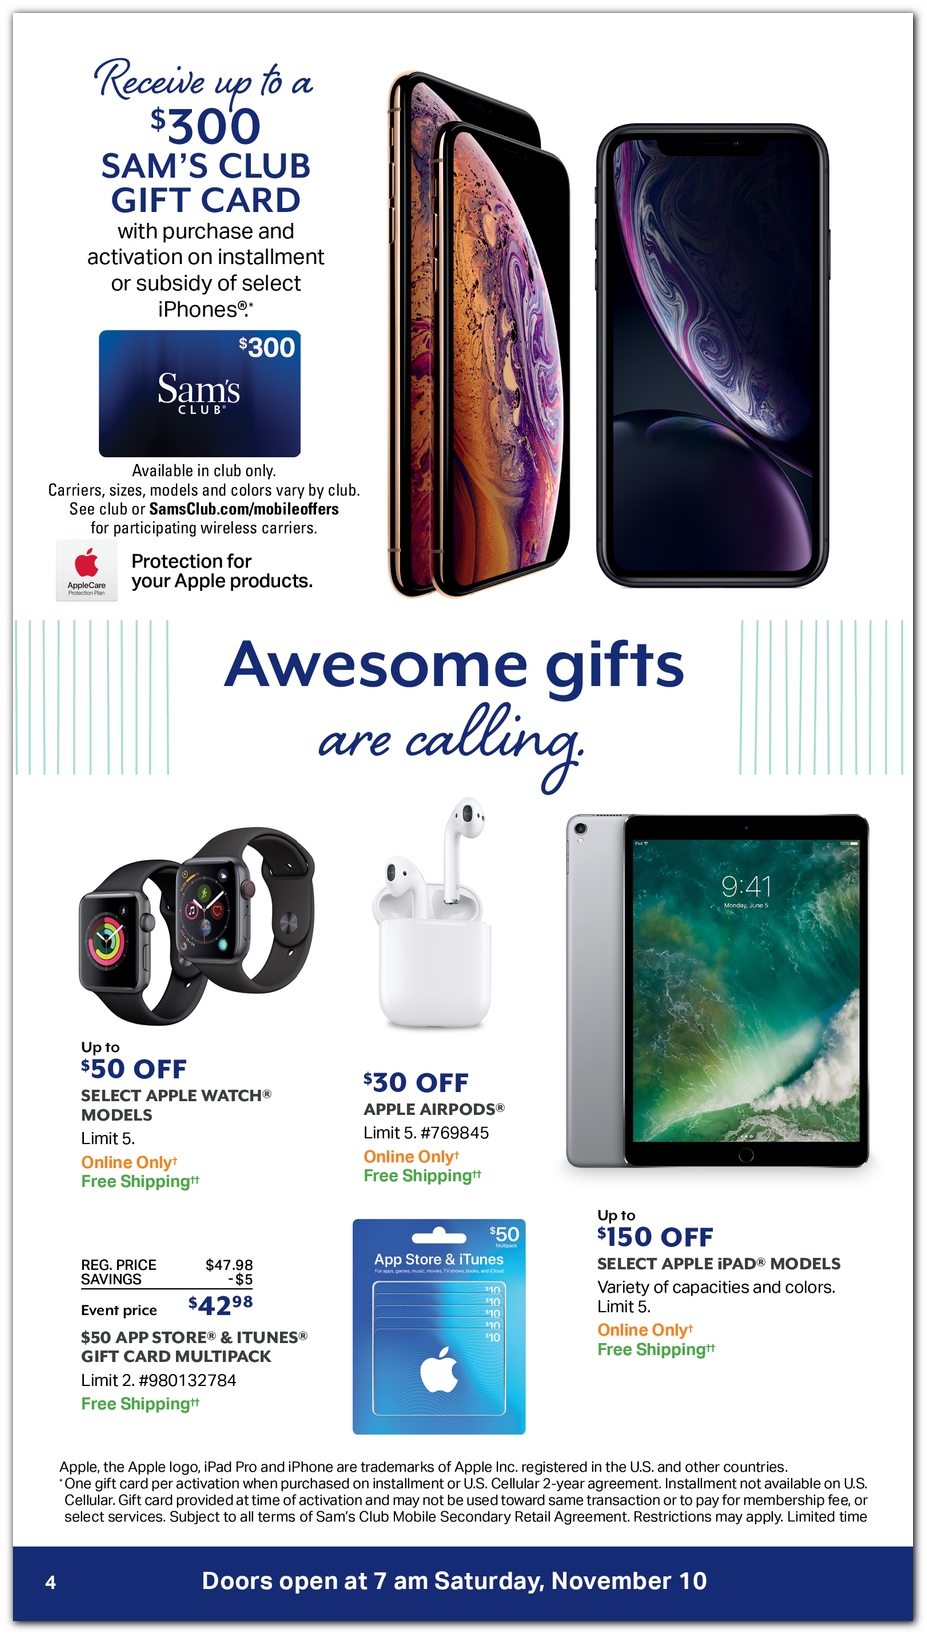 Sam's Club Super November 2019 Sales Ad & Deals